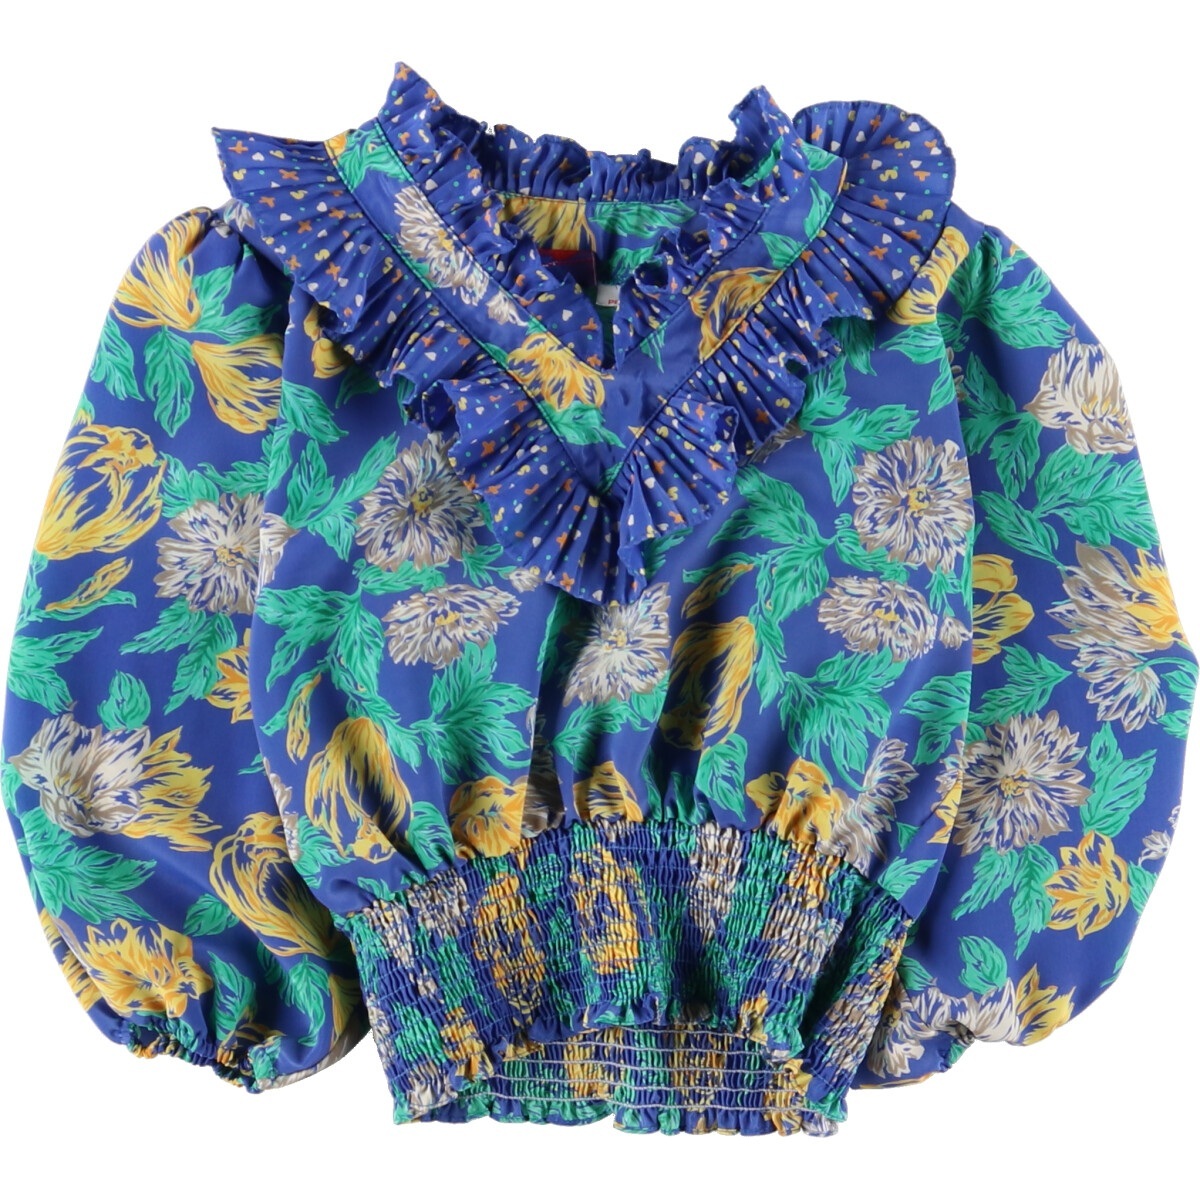  б/у одежда 80 годы Susan fre стул Susan Freis общий рисунок 7 минут рукав блуза USA производства женский XS Vintage /eaa349814 [SS2403]